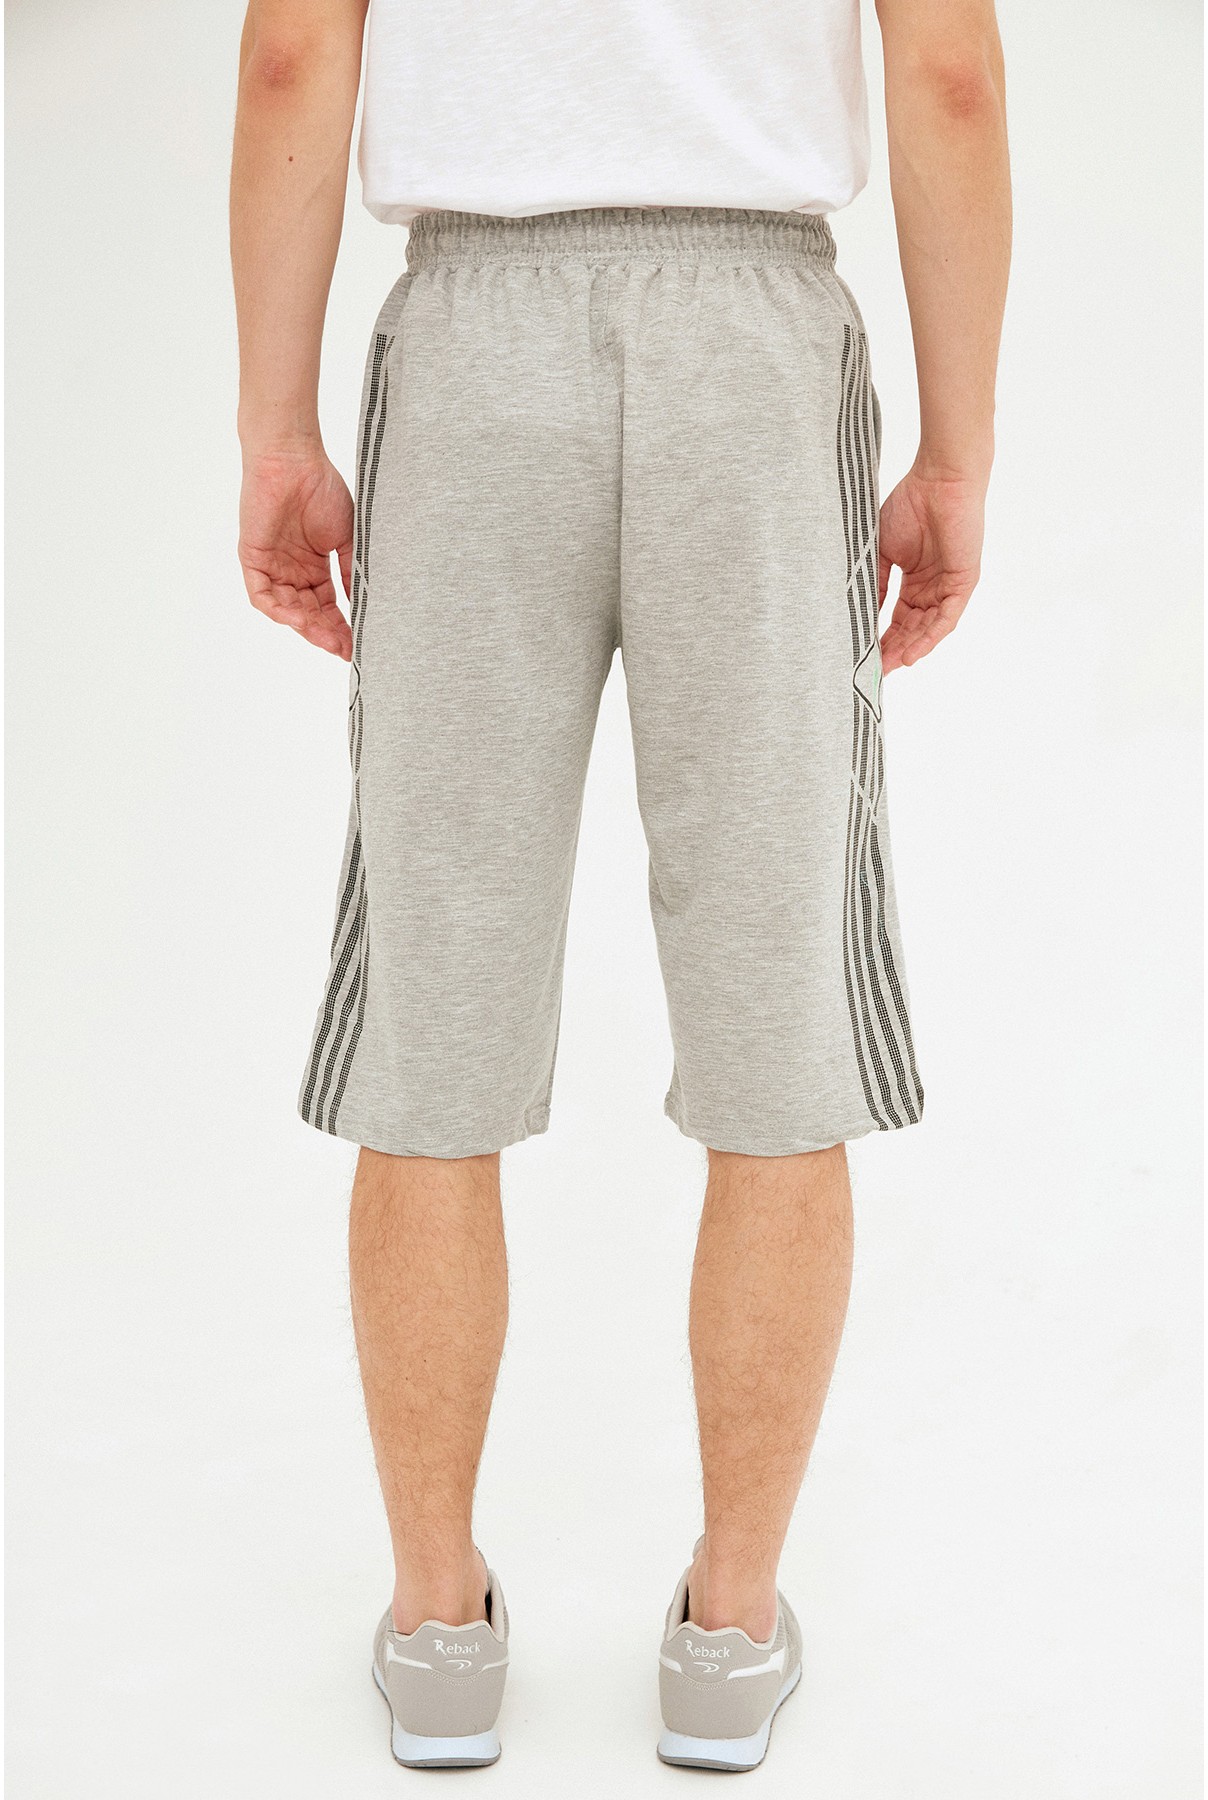 Gray men's shorts